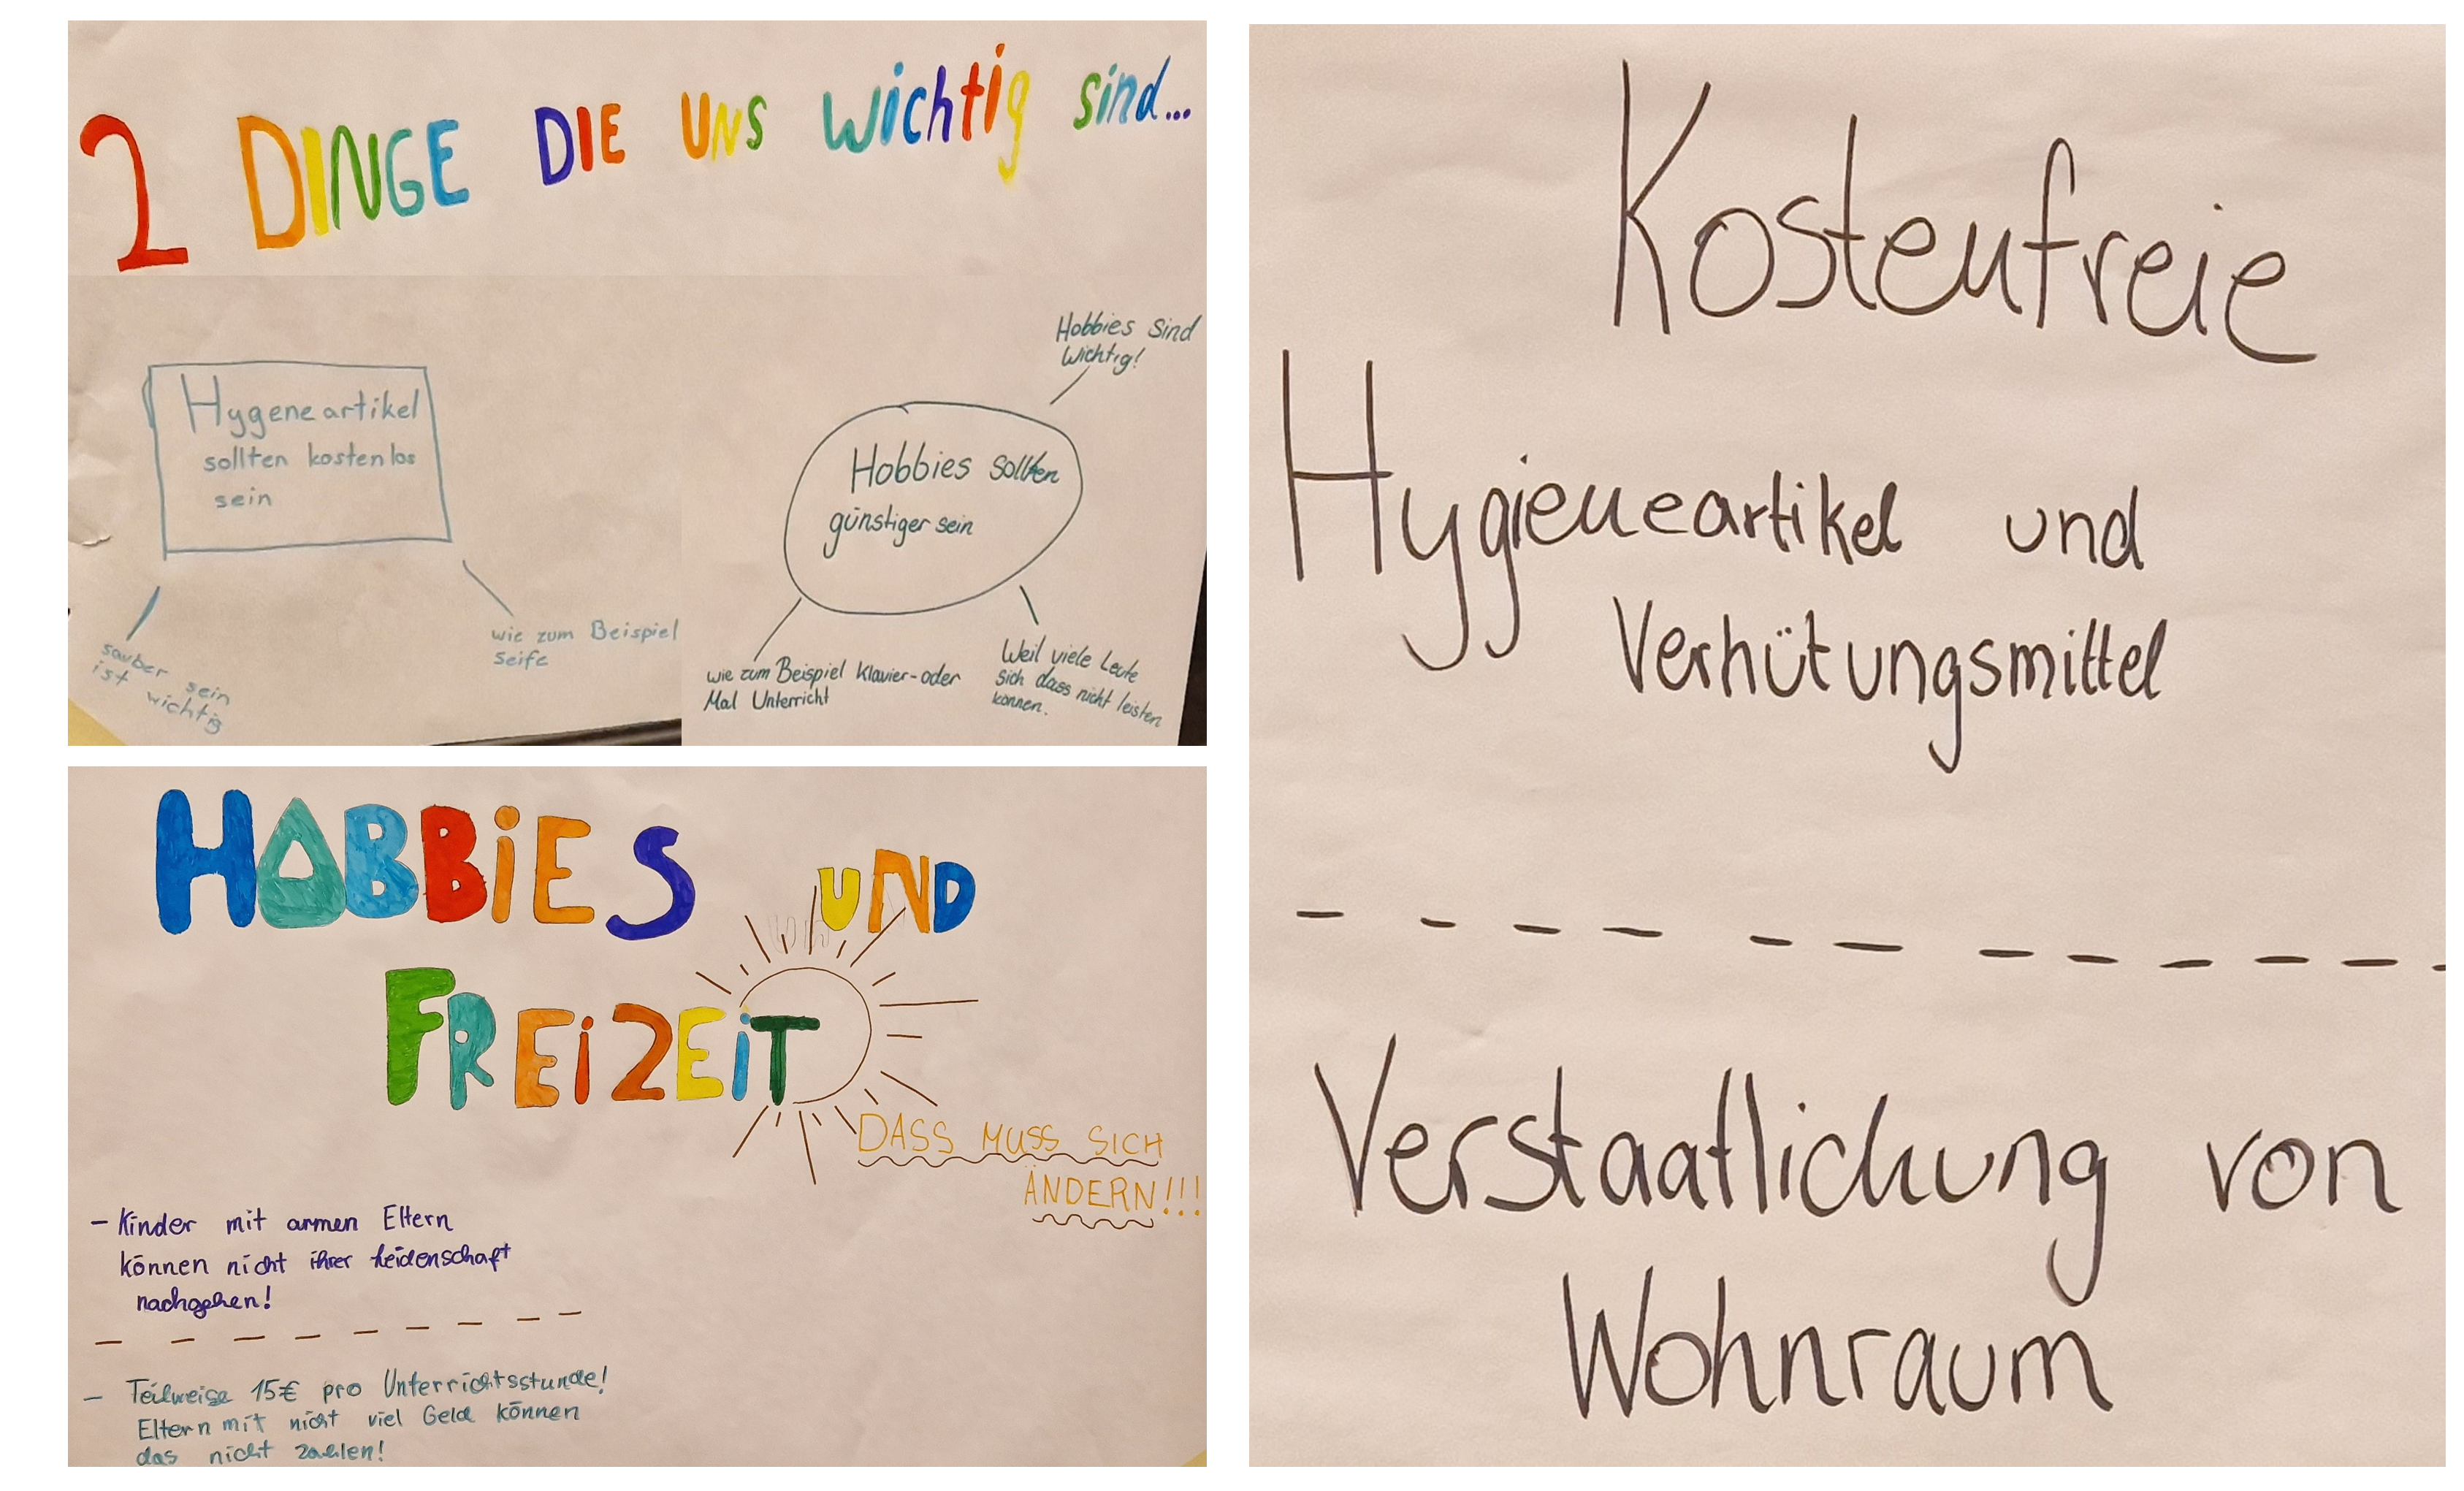 Das Bild zeigt Ergebnisse aus der Jugend-/ Zukunfskonferenz in Berlin. In der Jugendliche zu verschiedenen Themen an Workshops teilgenommen haben.